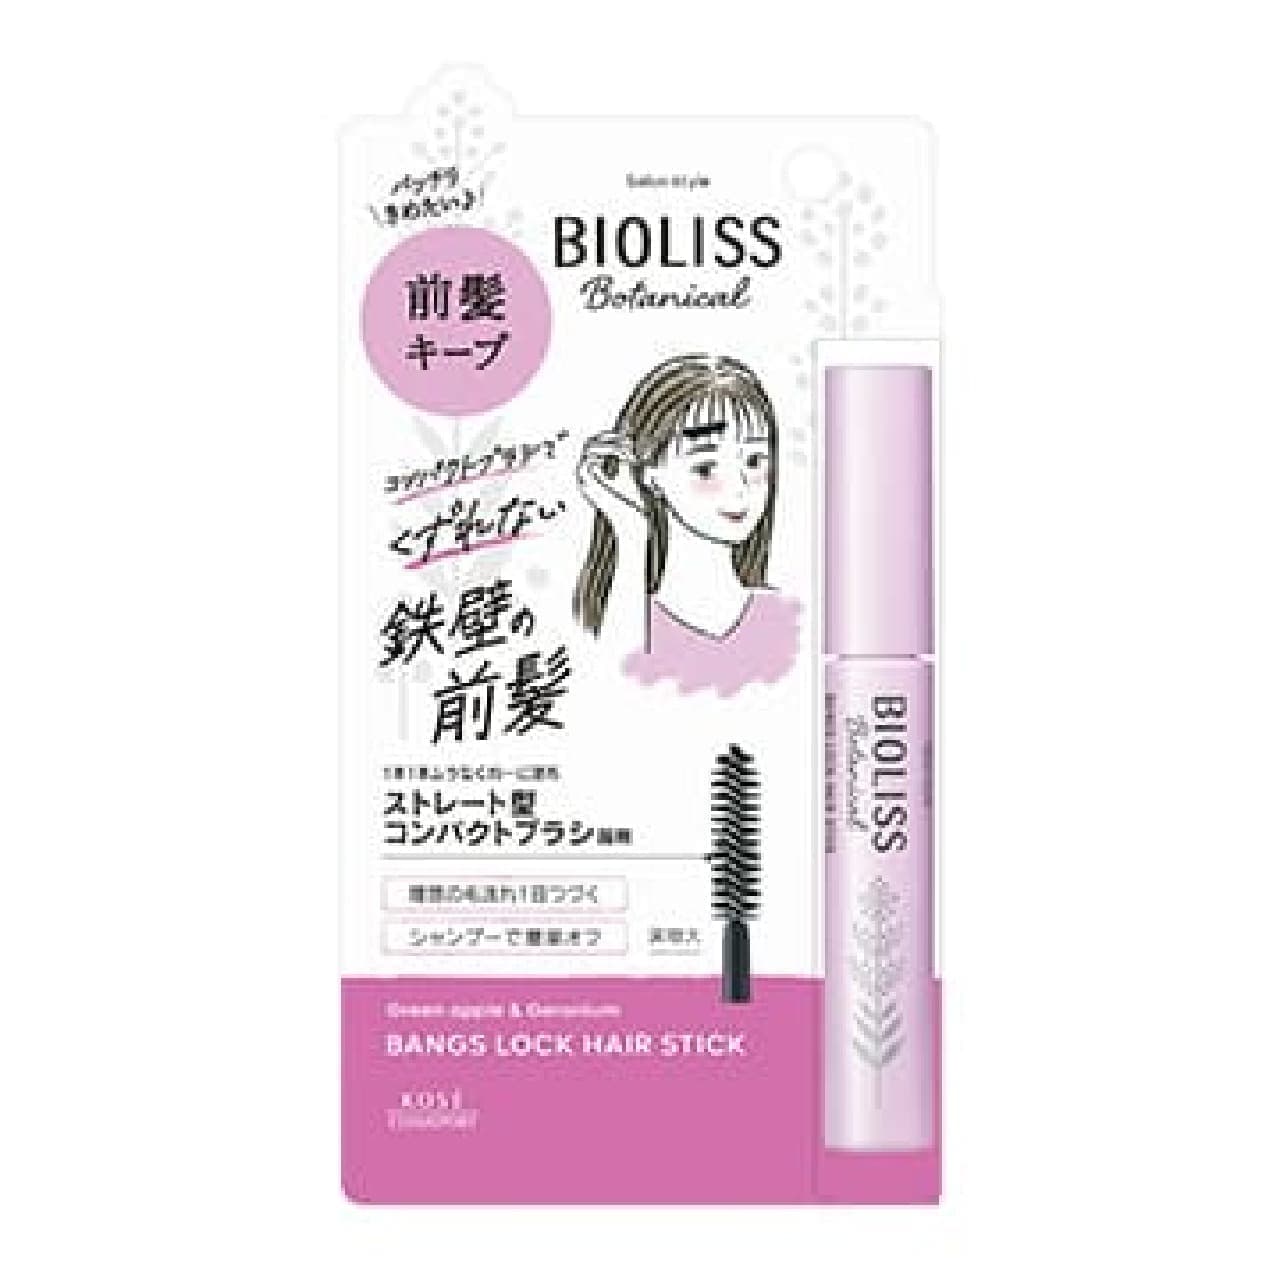 SS Biolis Botanical Bangs Lock Hair Stick